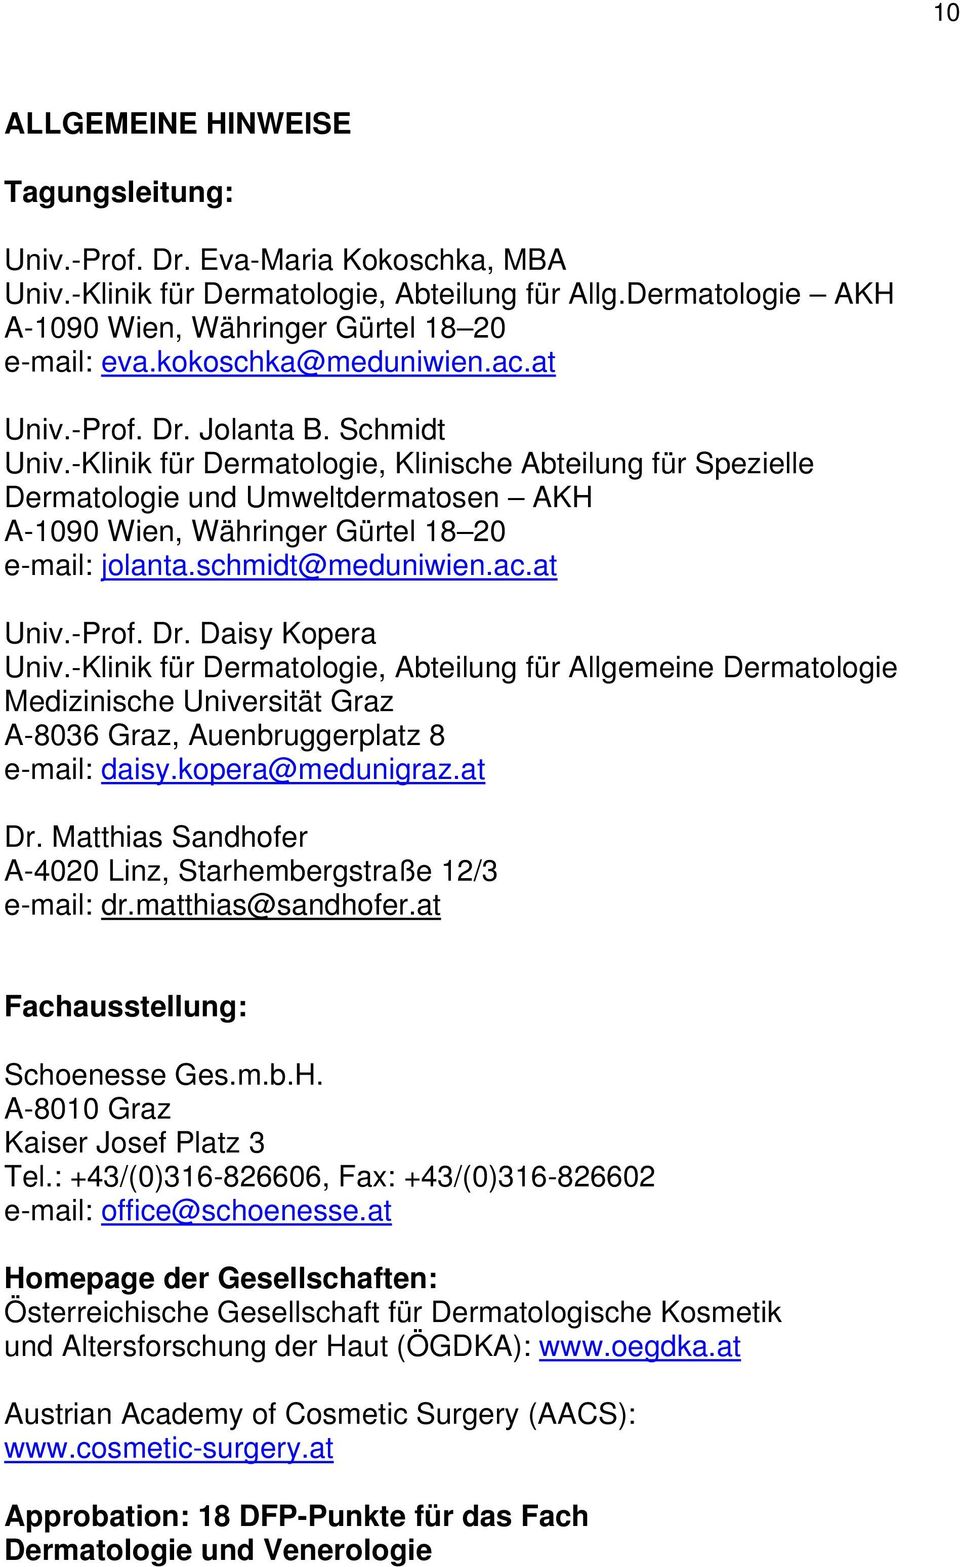 -Klinik für Dermatologie, Klinische Abteilung für Spezielle Dermatologie und Umweltdermatosen AKH A-1090 Wien, Währinger Gürtel 18 20 e-mail: jolanta.schmidt@meduniwien.ac.at Univ.-Prof. Dr.